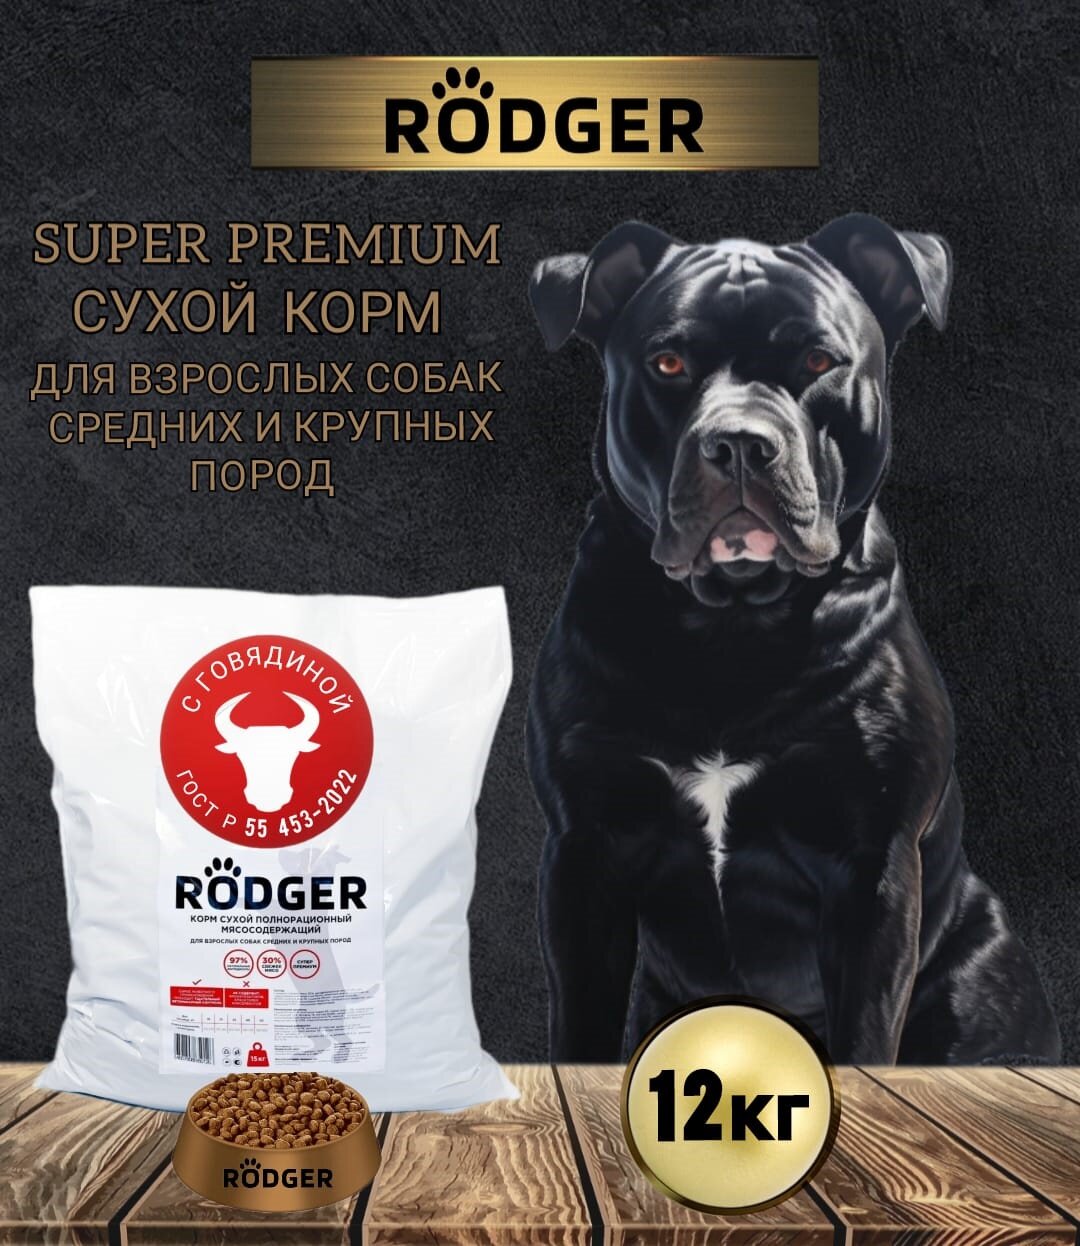 RODGER Сухой Корм SUPER PREMIUM, для собак средних и крупных пород, говядина 12кг